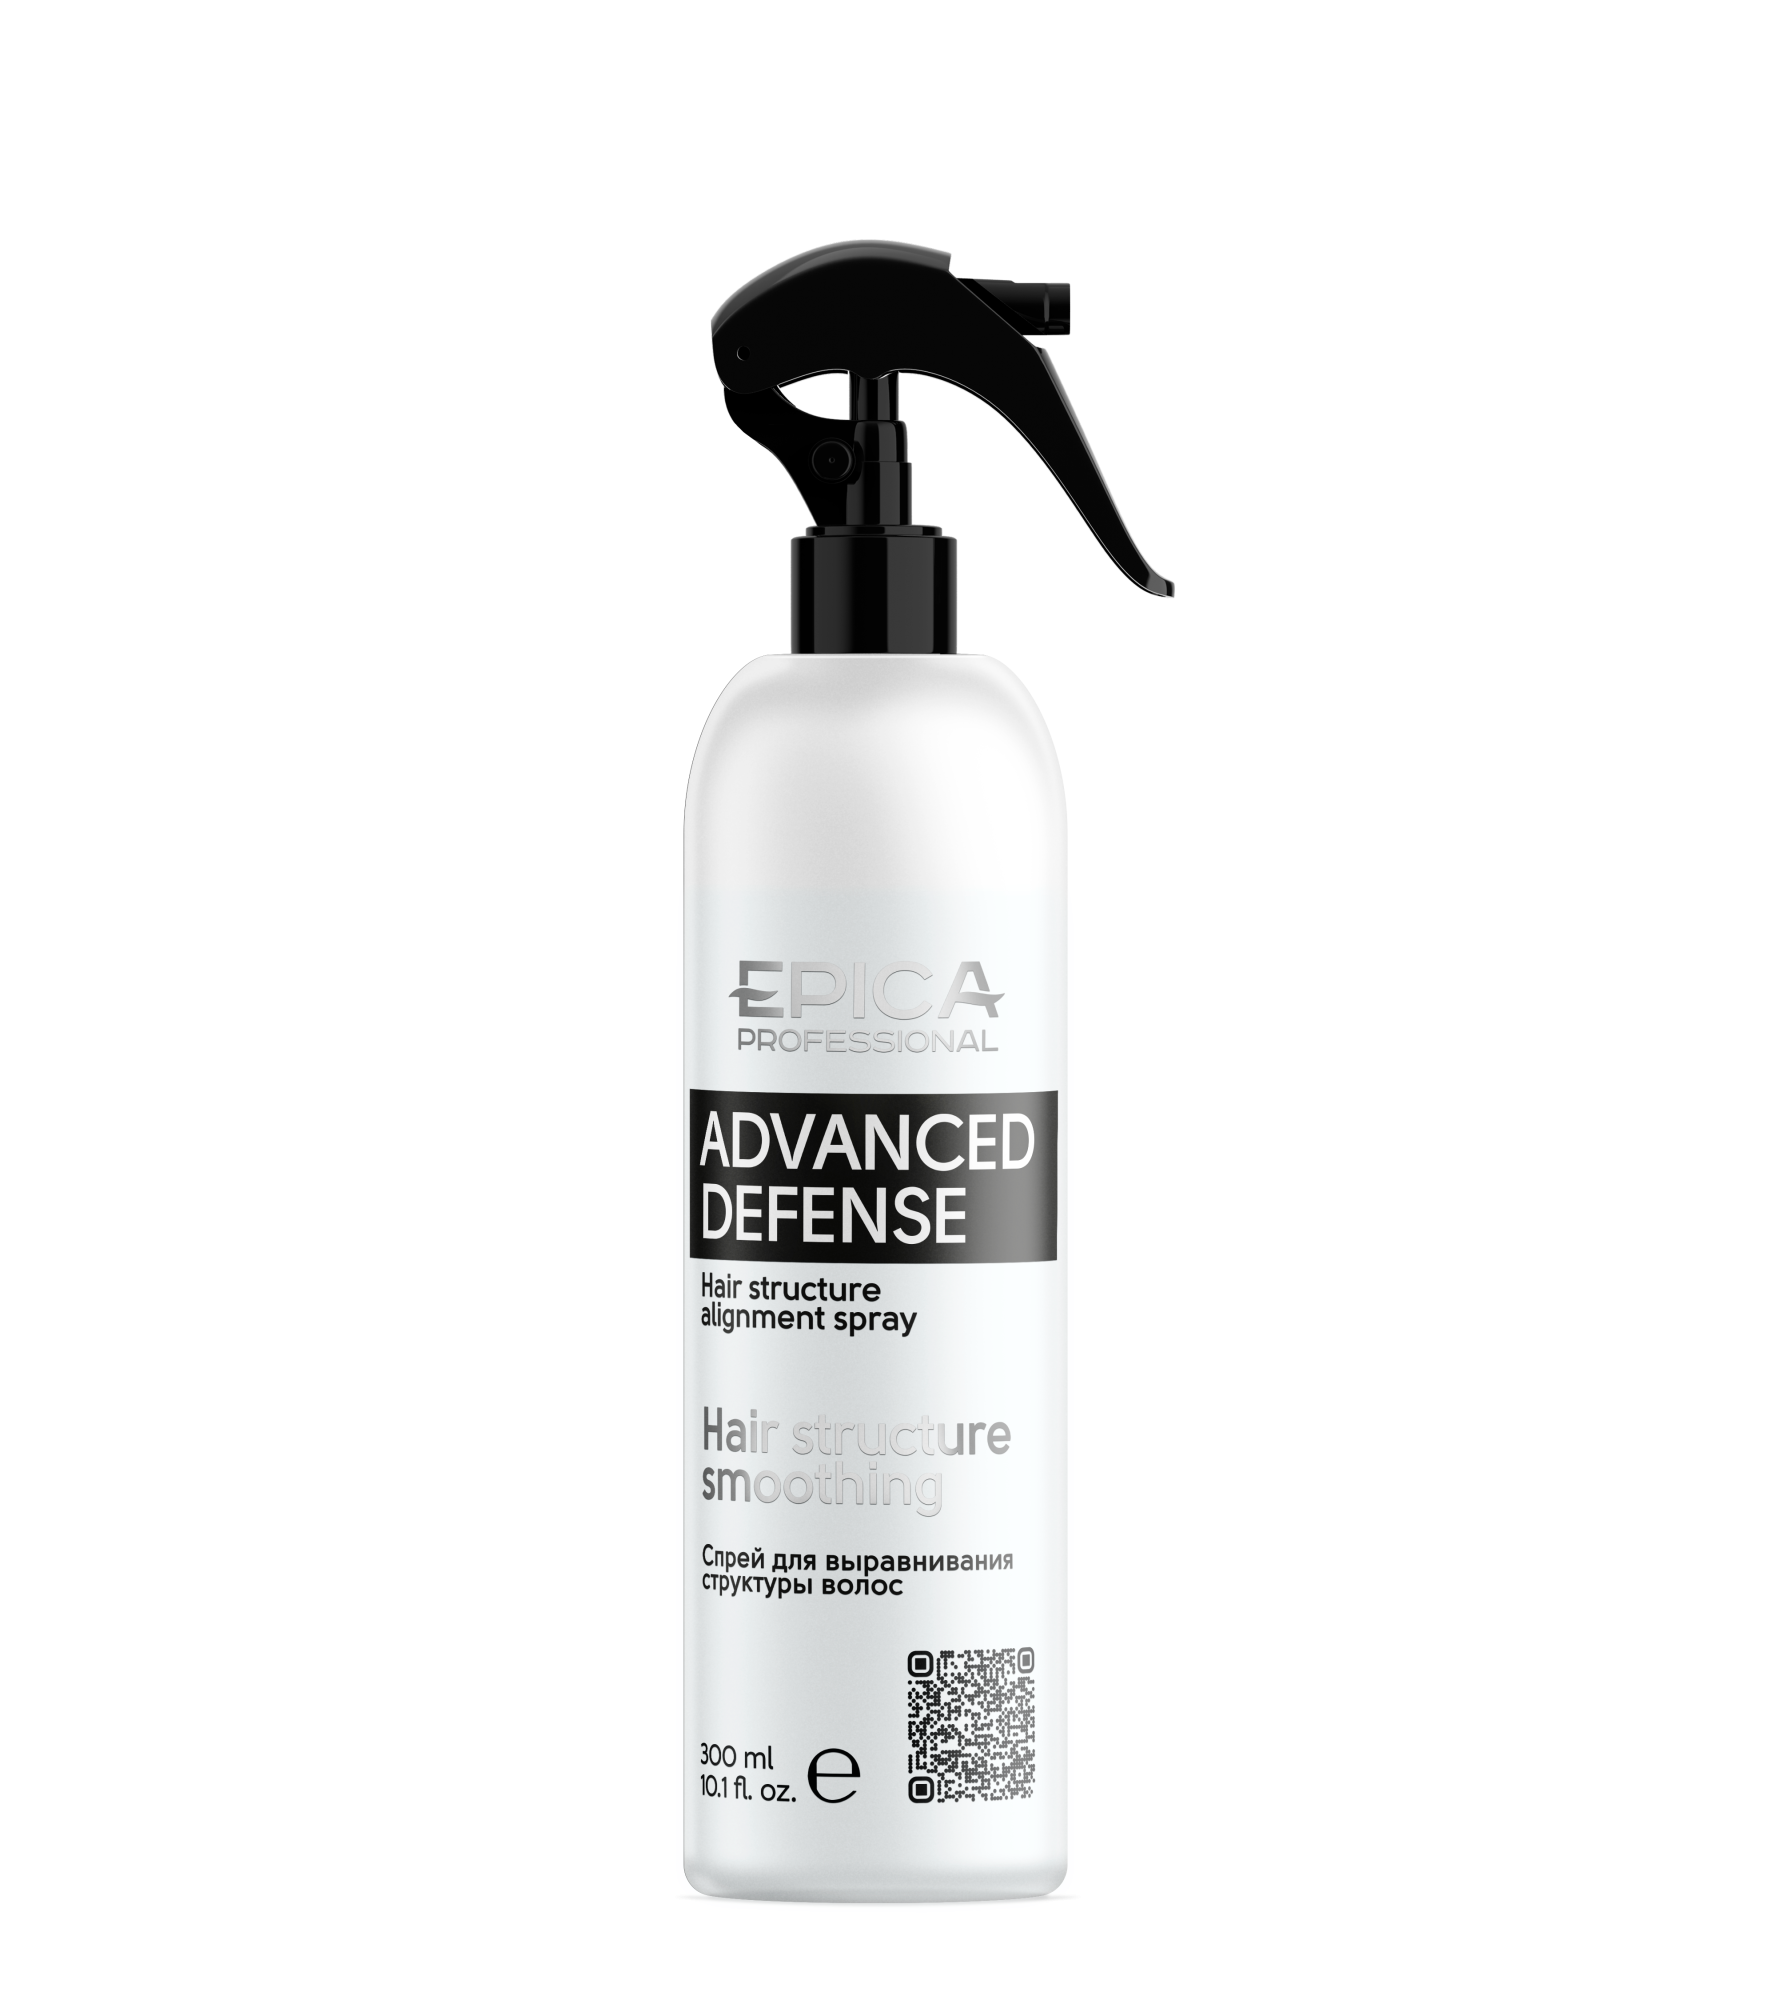 Спрей Epica Advanced Defense для выравнивания структуры волос, 300 мл средство для защиты волос перед химической завивкой curl definer